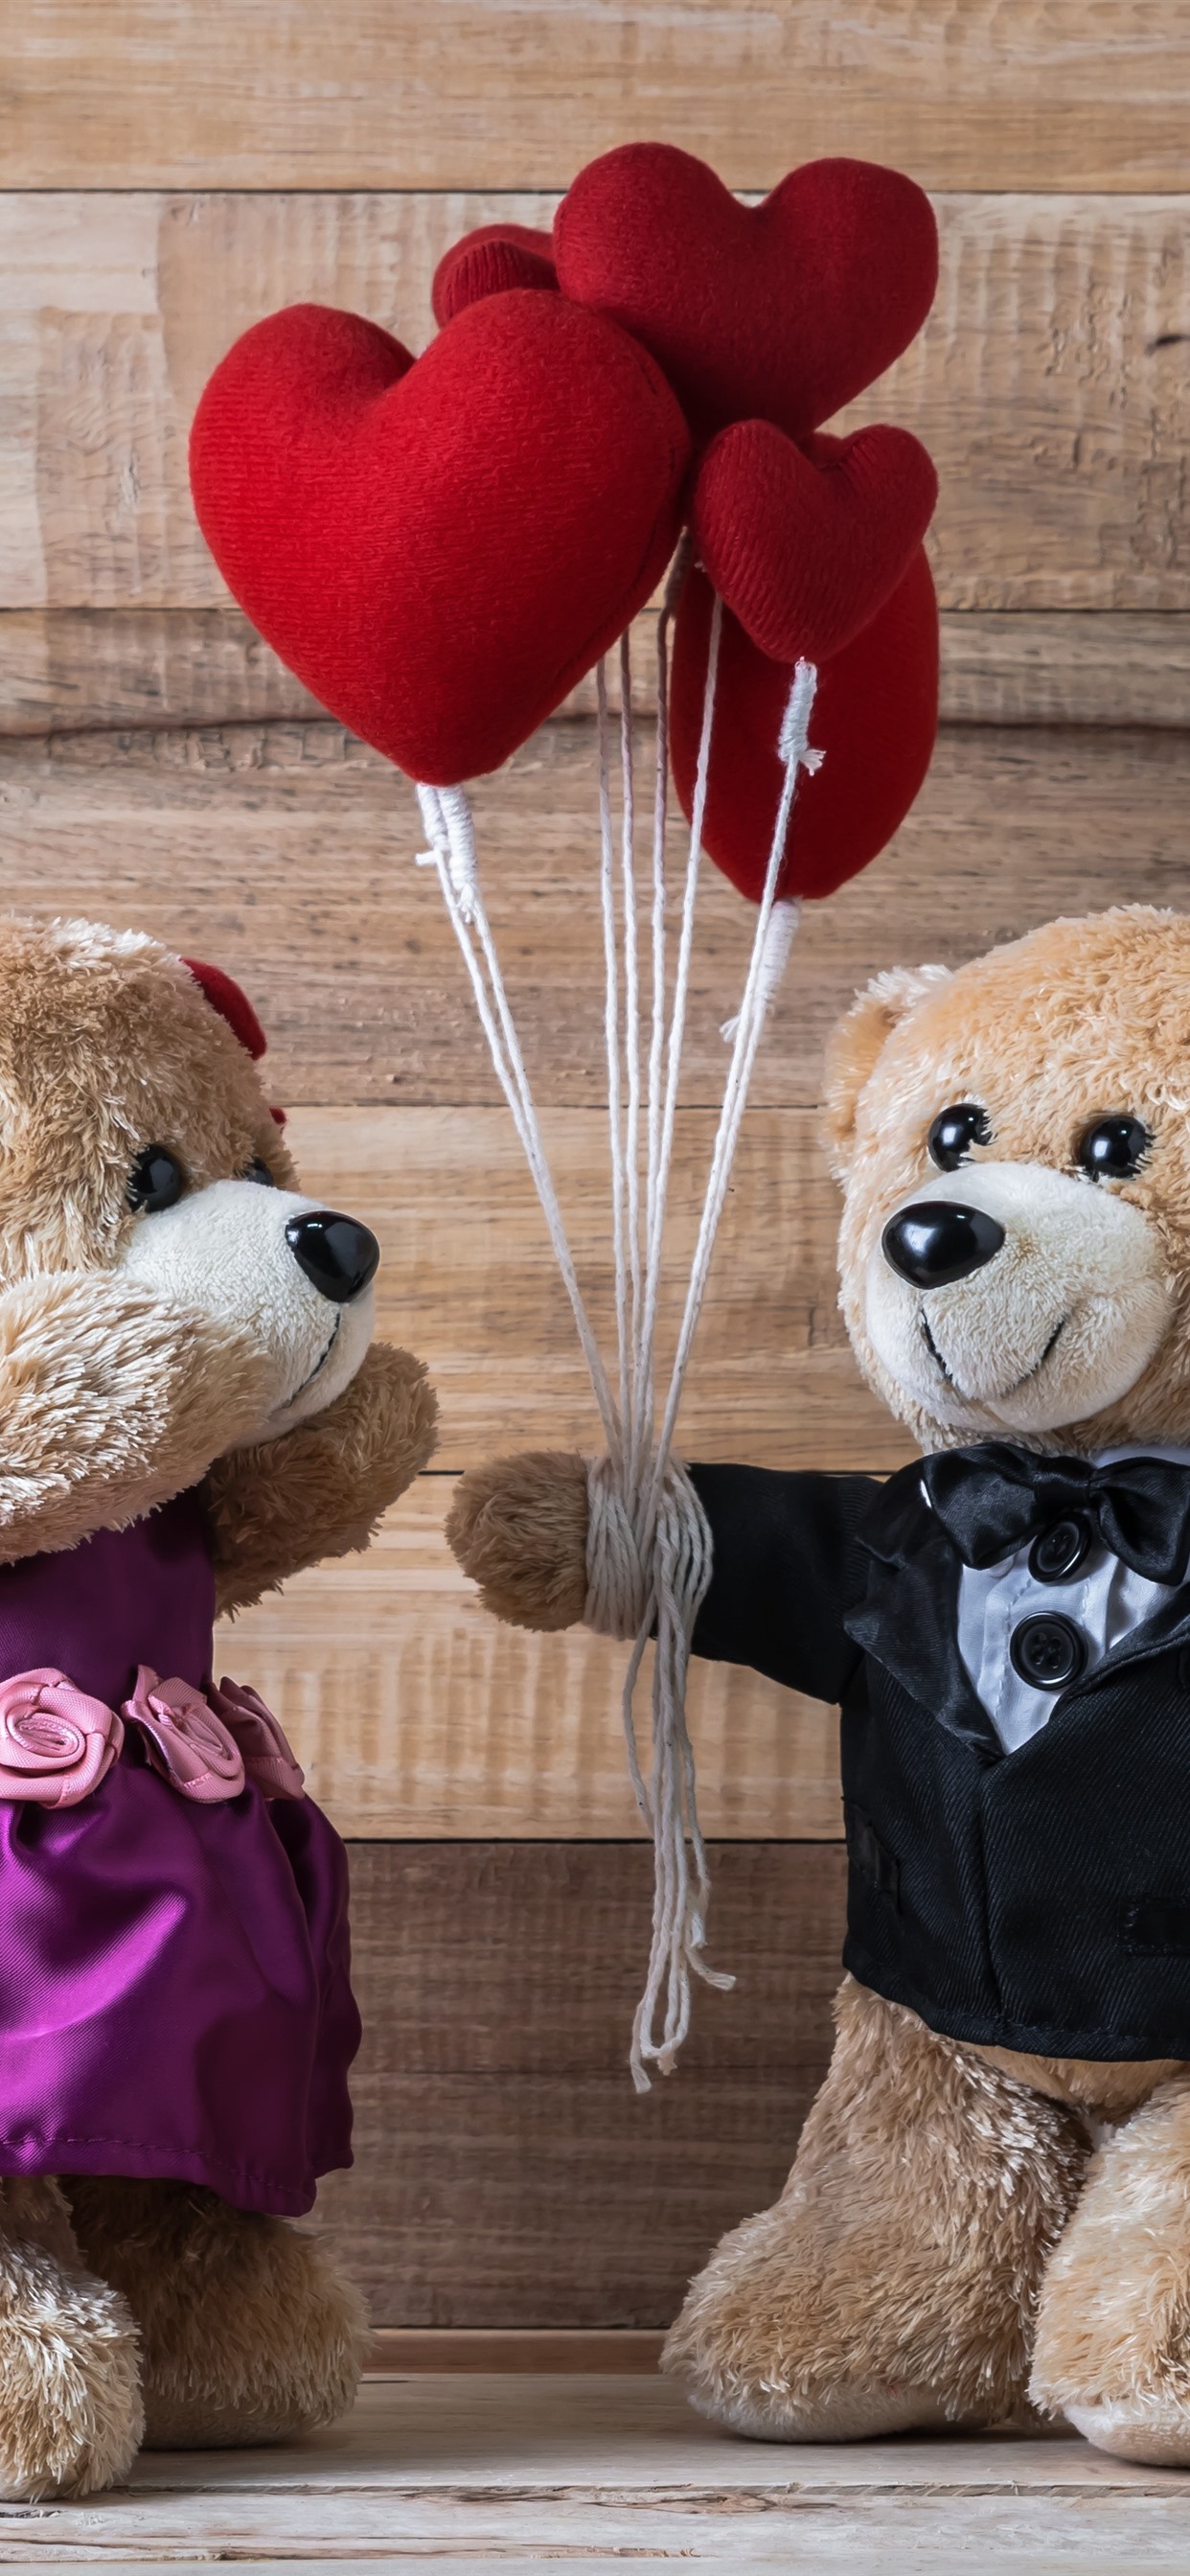 Romantic Love Teddy Bear , HD Wallpaper & Backgrounds